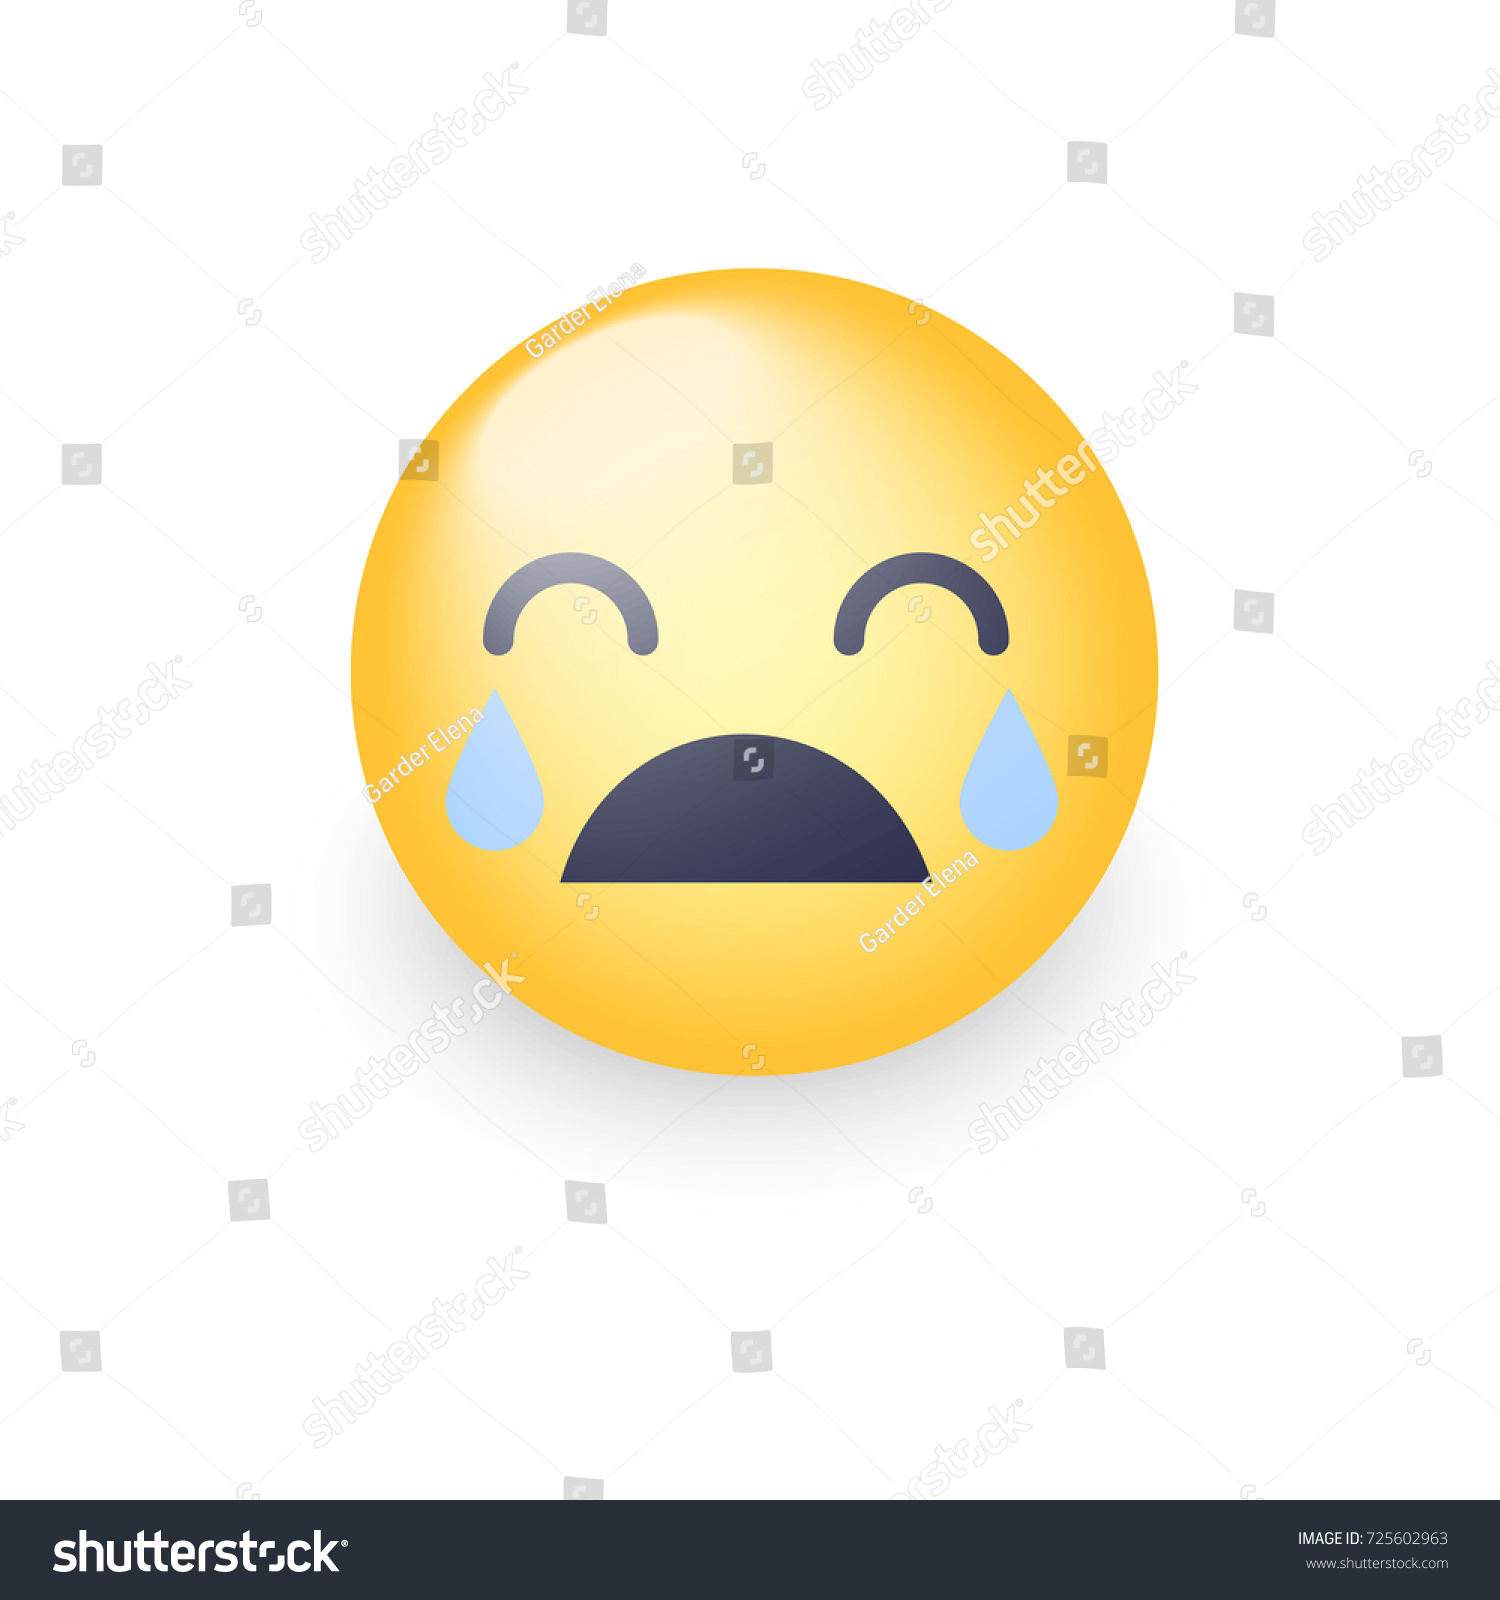 Loudly Crying Emoji Smiley Closed Eyes Stock Illustration 725602963